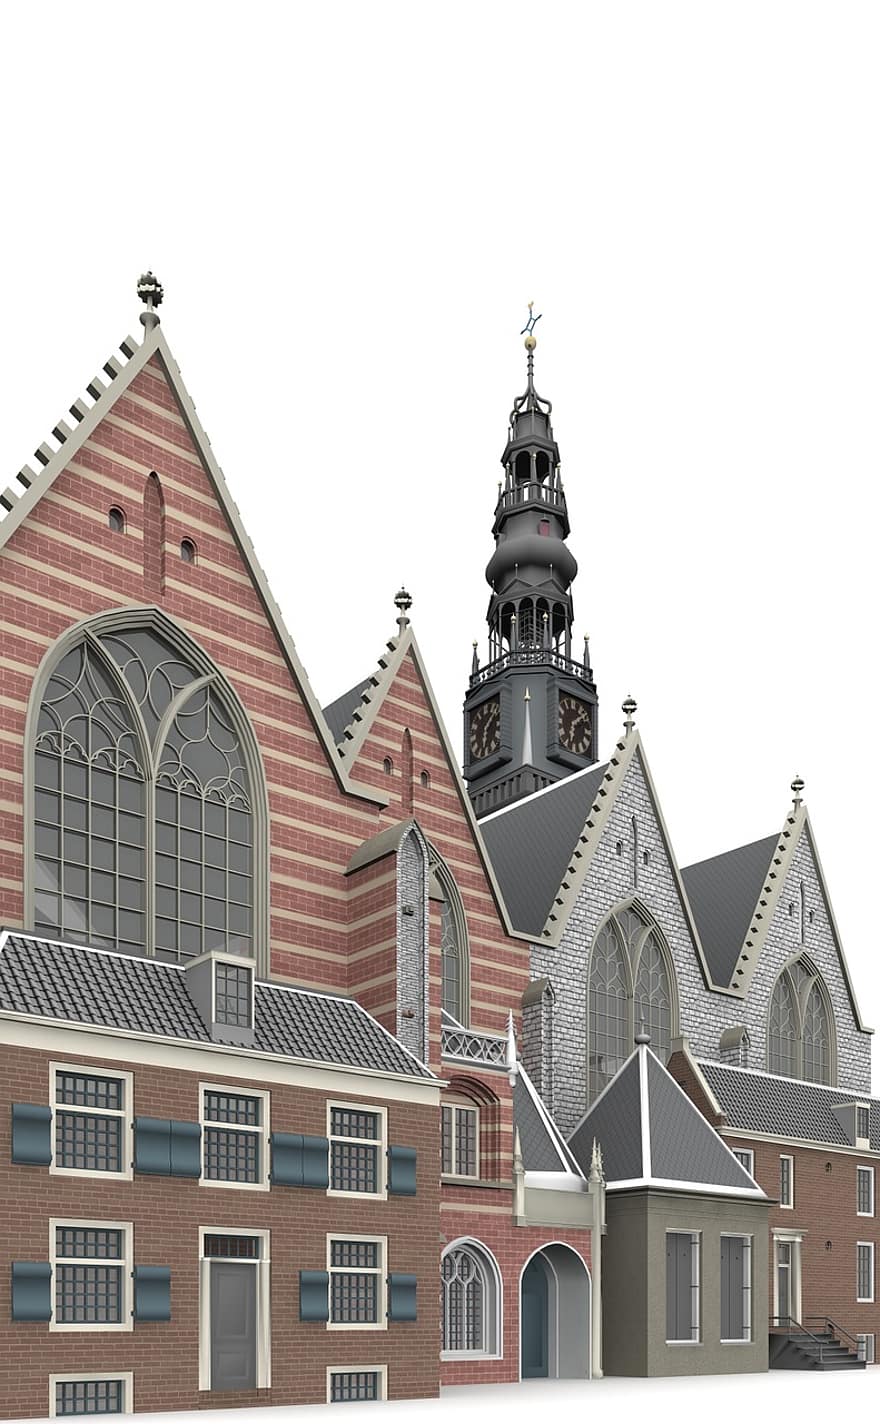 ud, kerk, amsterdam, mimari, bina, kilise, ilgi alanları, tarihsel, turistler, cazibe, işaret